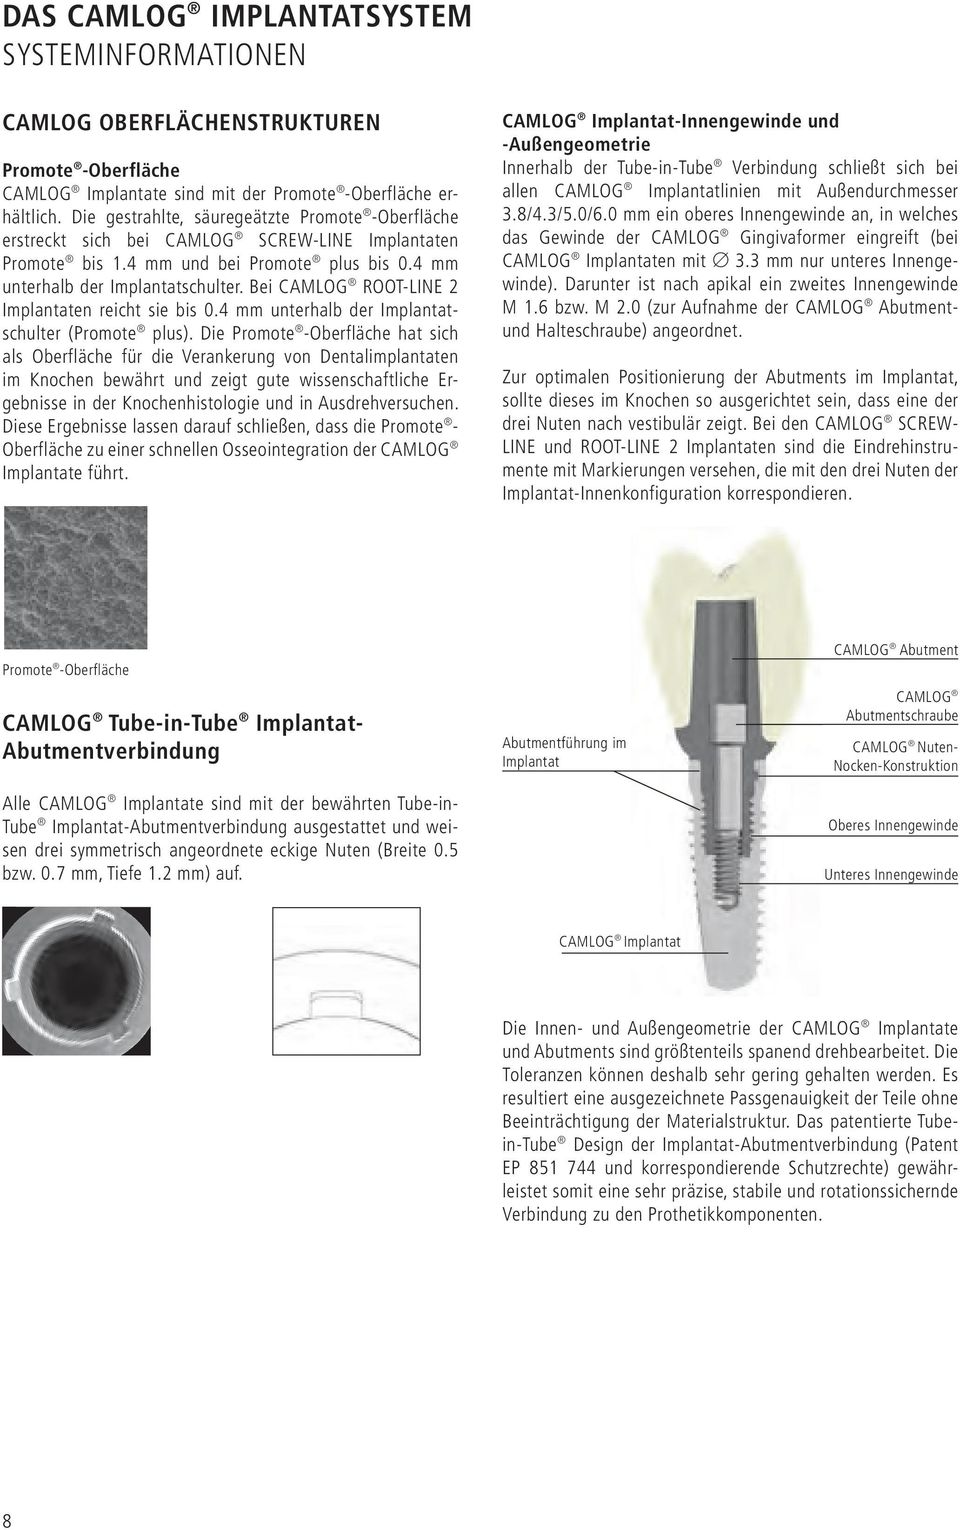 Bei CAMLOG ROOT-LINE 2 Implantaten reicht sie bis 0.4 mm unterhalb der Implantatschulter (Promote plus).